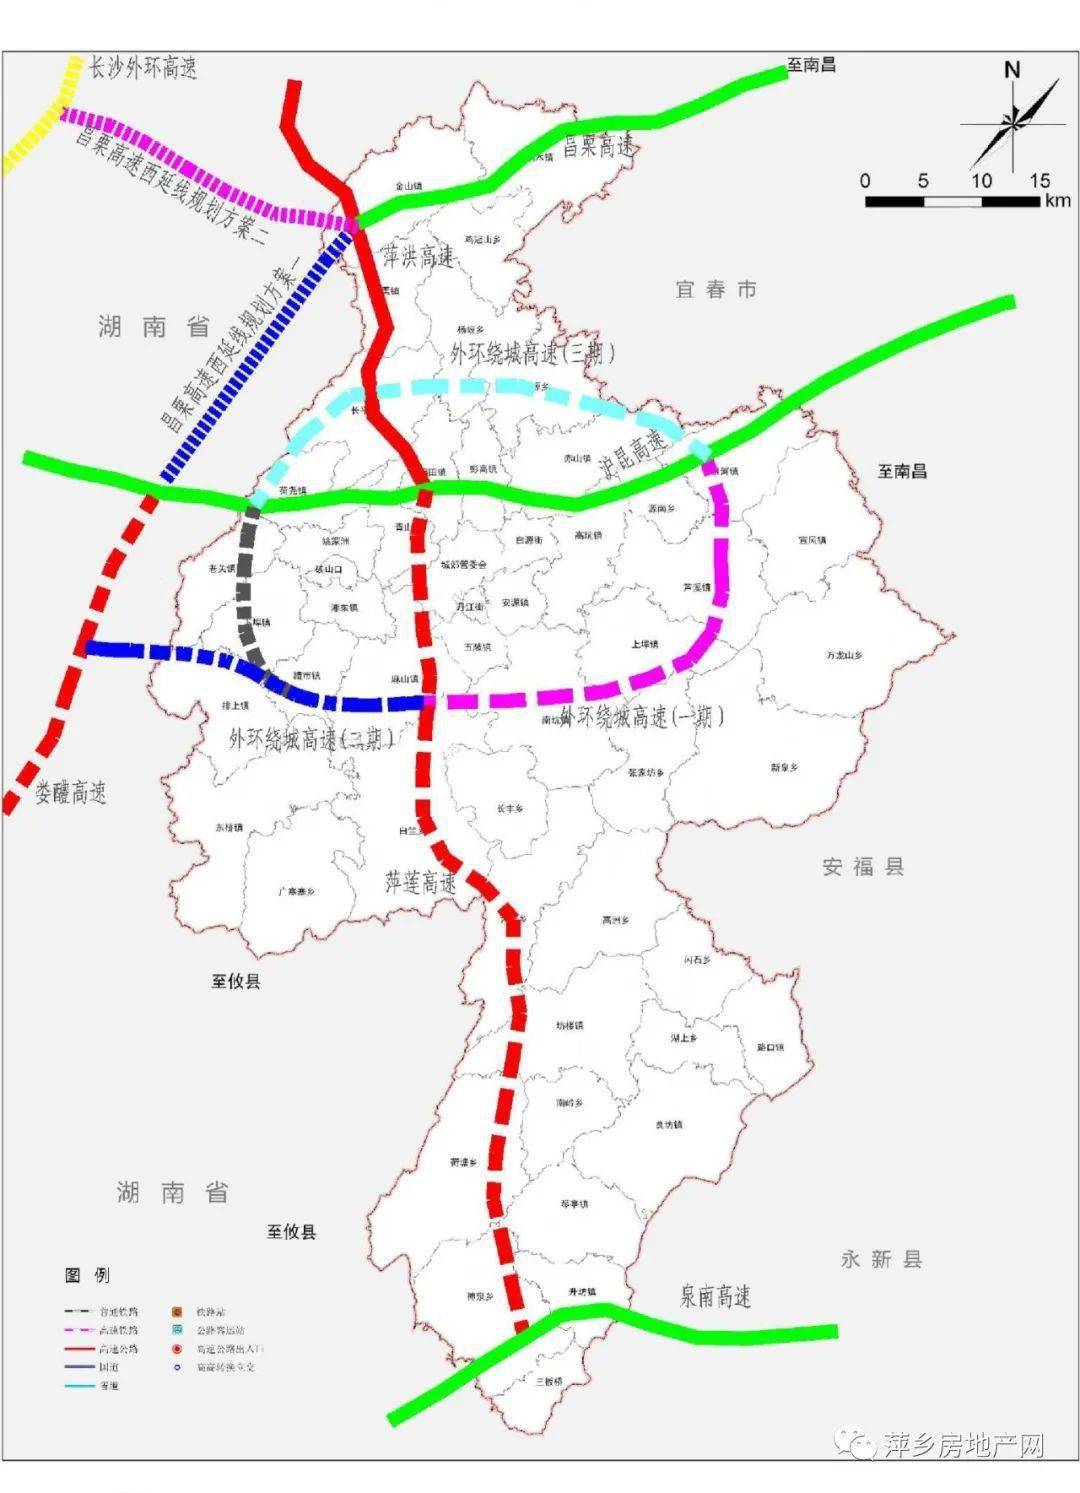 萍乡市POI数据|边界|建筑轮廓|铁路轨道|道路路网|水域|水系水路|GeoJSON|Shapefile-江西省-POI数据